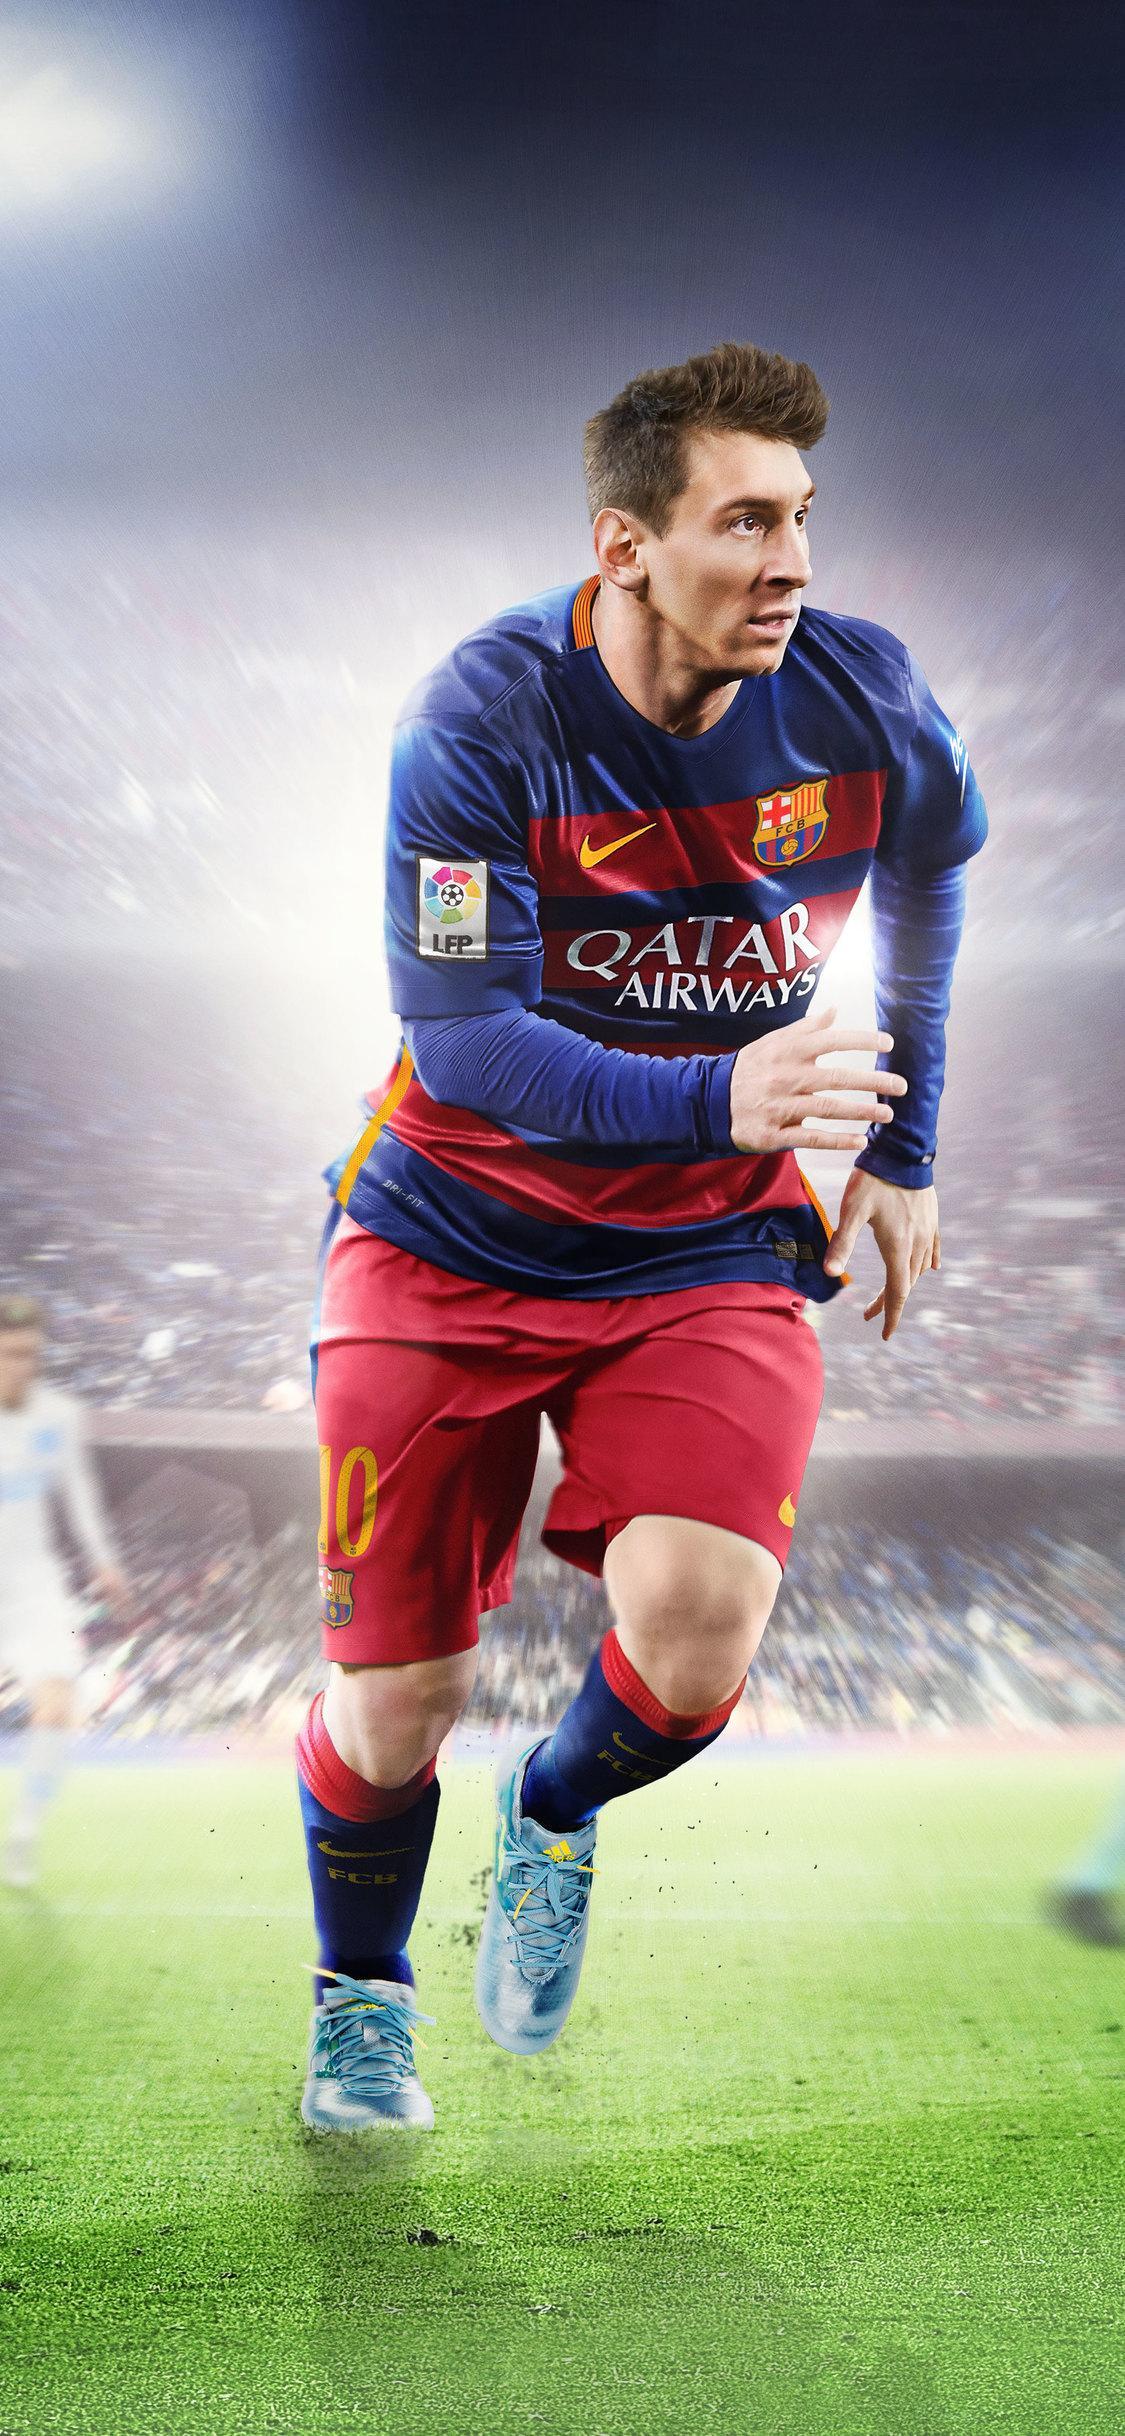 Sự kết hợp tuyệt vời giữa Messi và chất lượng hình ảnh 8K sẽ cho bạn trải nghiệm hình ảnh sống động và chân thực nhất. Hãy khám phá những bức hình để cảm nhận sự nghiệp và tài năng của \